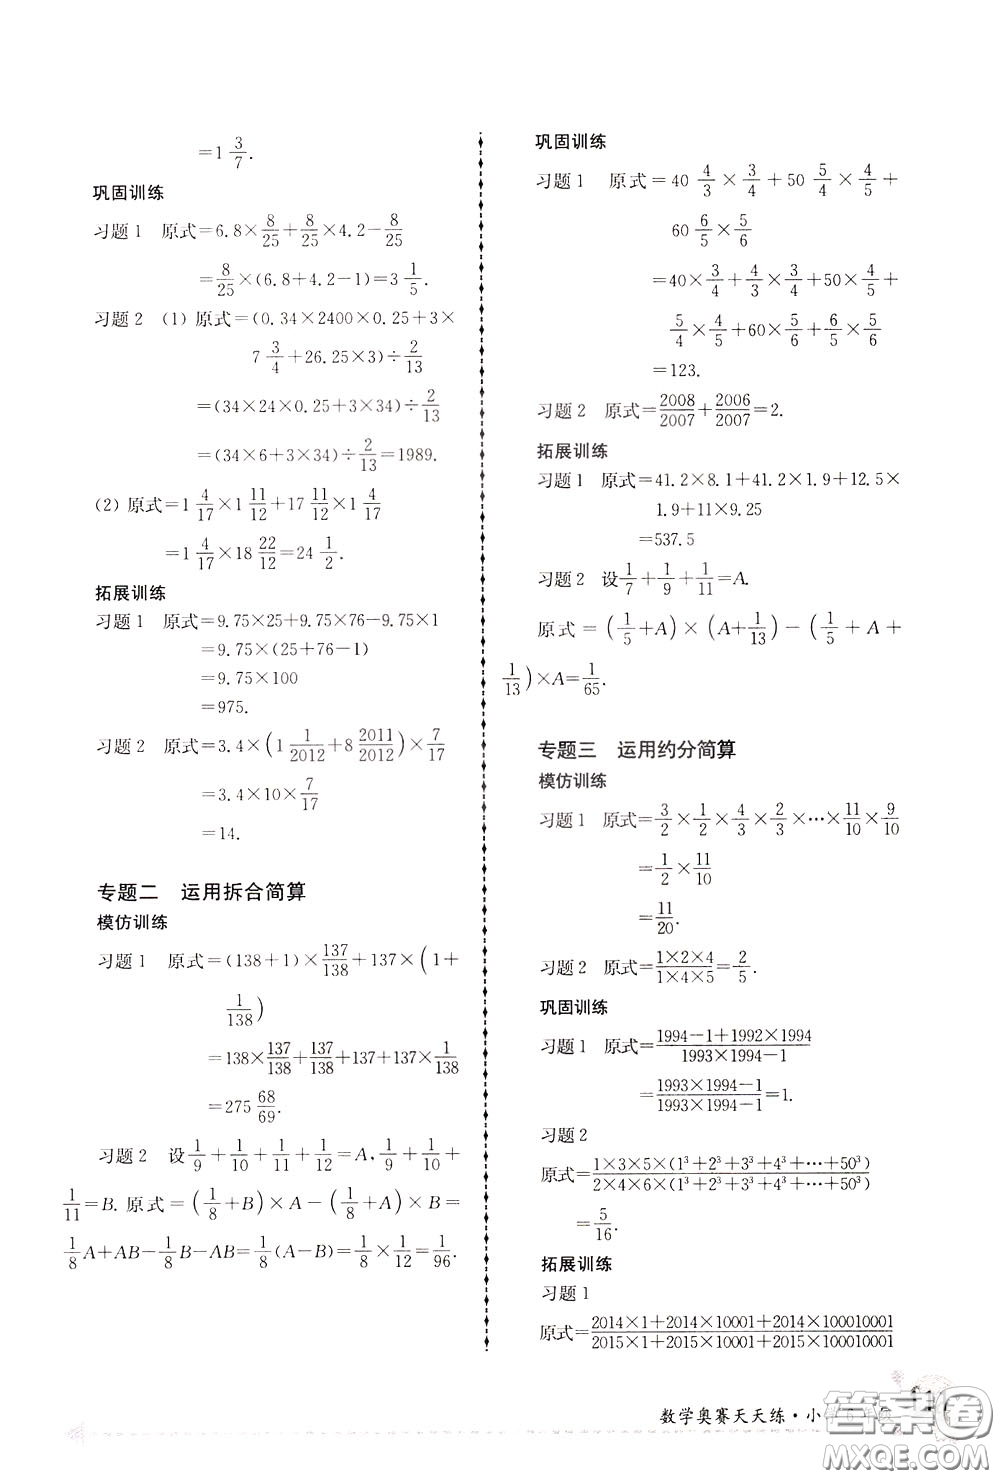 南京大学出版社2020年南大教辅数学奥赛天天练第6版小学6年级参考答案